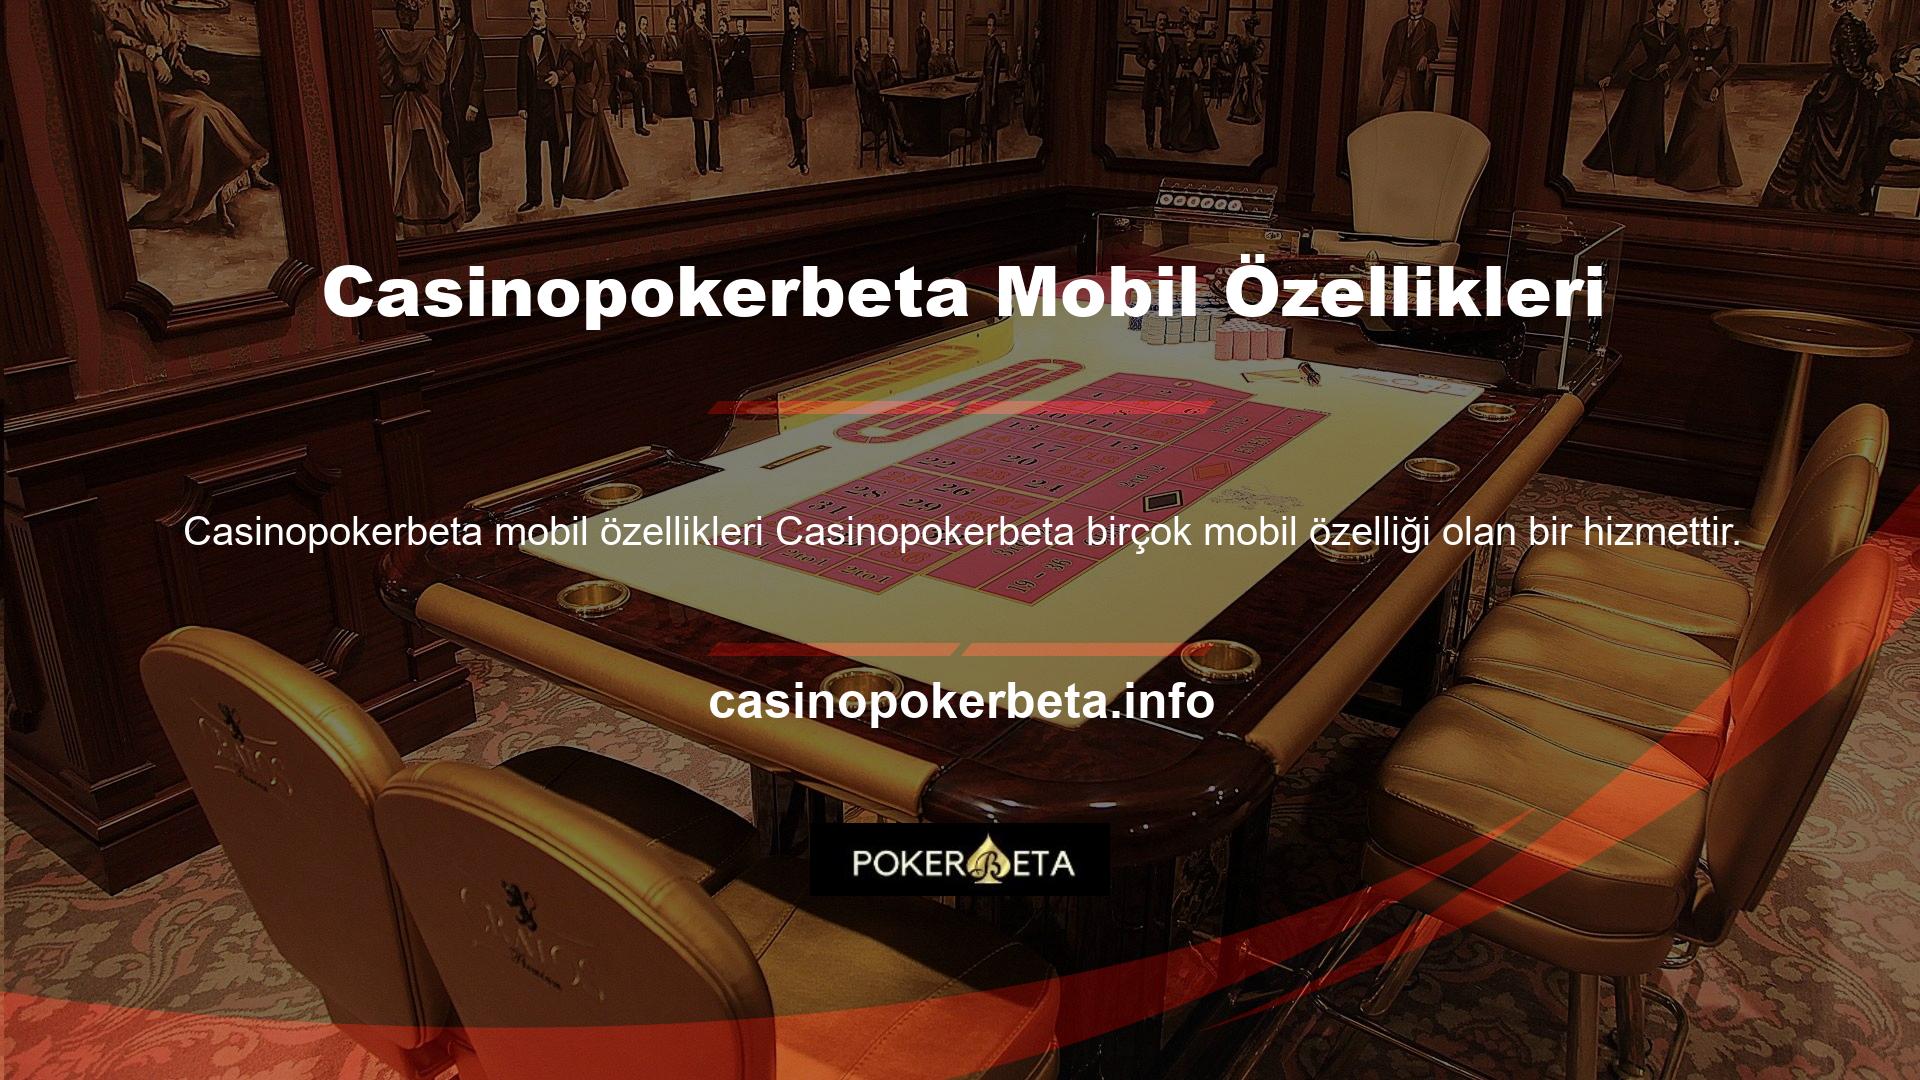 Gerekli altyapıyı sağlayan ve Casinopokerbeta web sitesini barındıran bir mobil uygulama oyun severlerin en büyük taleplerinden biridir